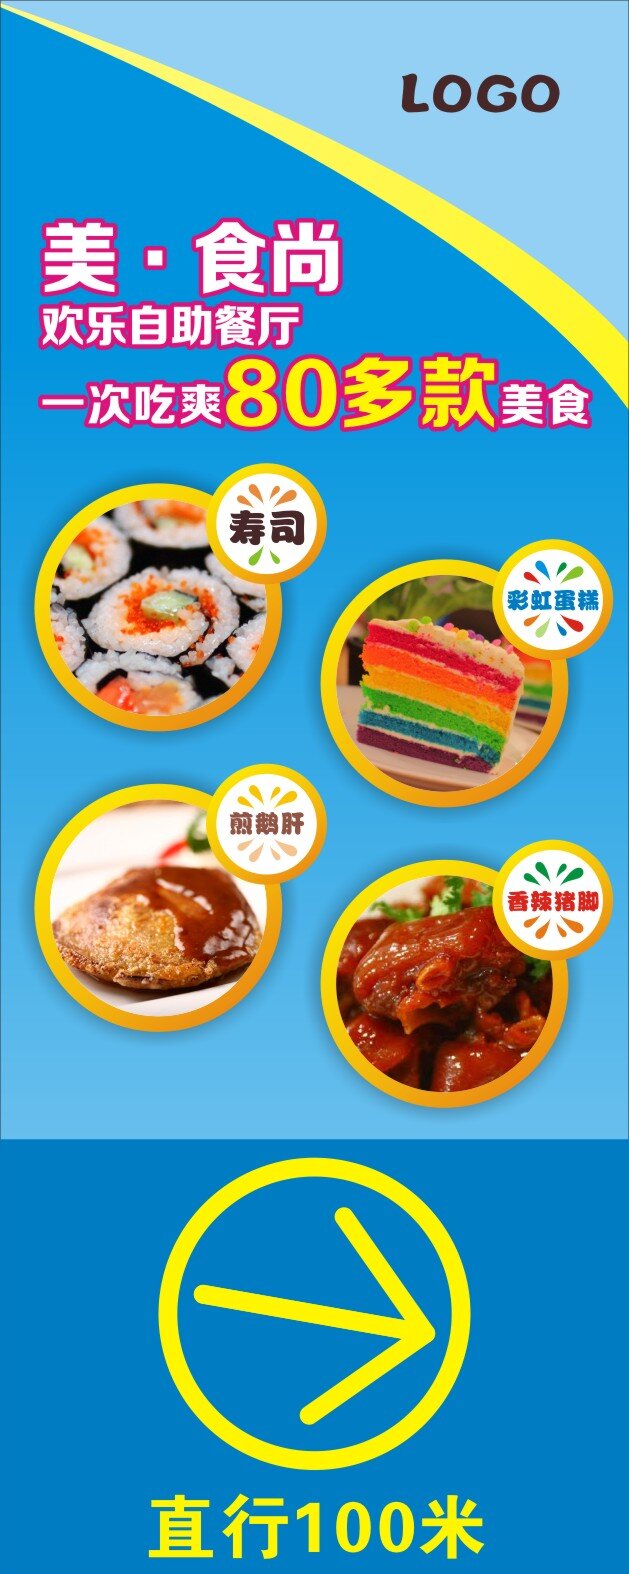 餐厅 指示牌 餐厅指示牌 自助餐 寿司 彩虹蛋糕 香辣猪脚 煎鹅肝 蓝色